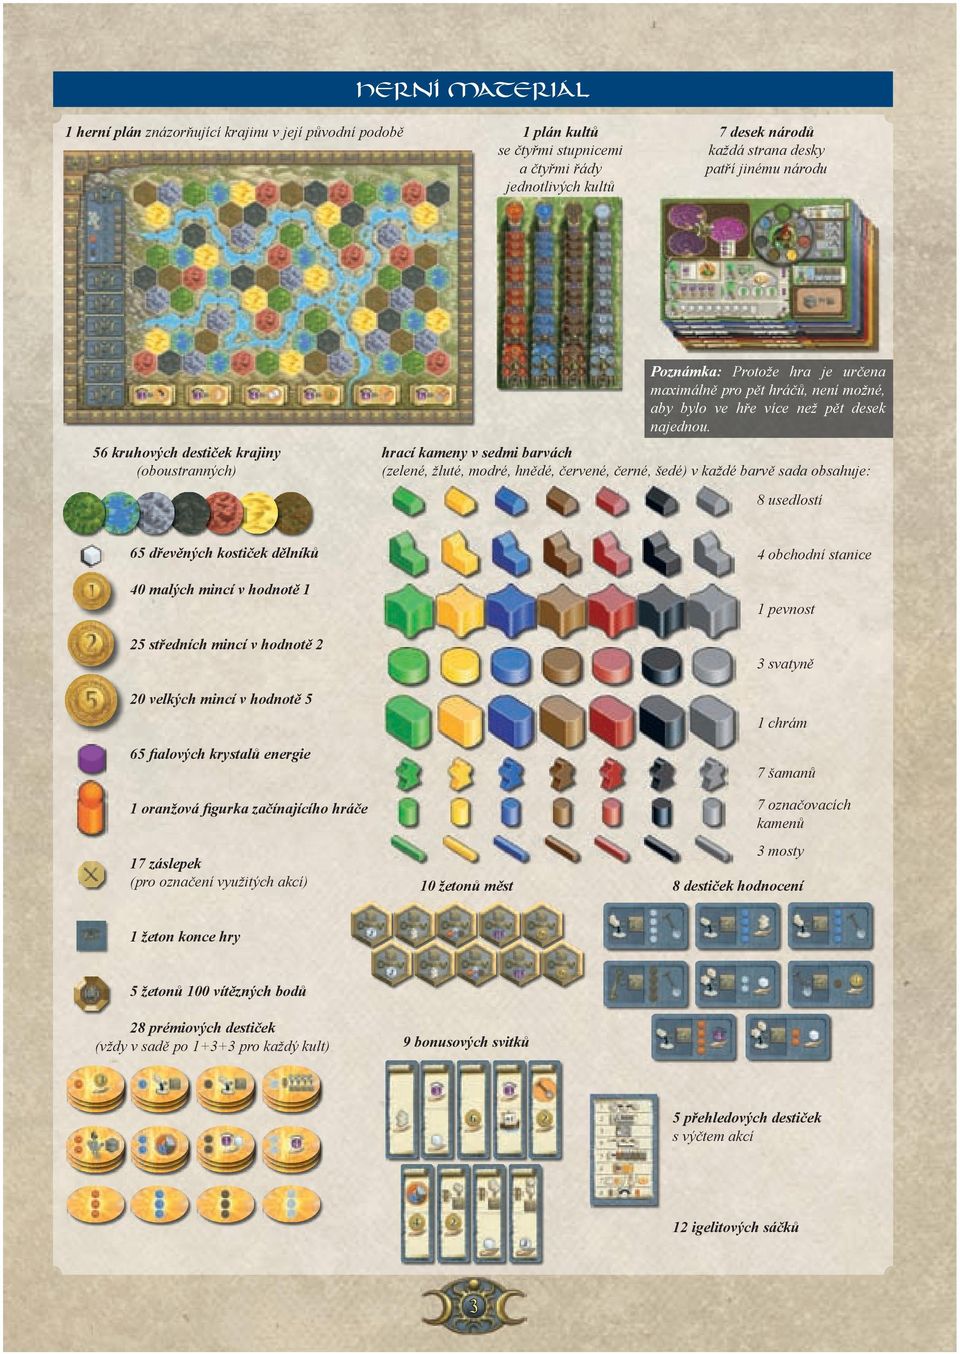 hrací kameny v sedmi barvách (zelené, žluté, modré, hnědé, červené, černé, šedé) v každé barvě sada obsahuje: 8 usedlostí 65 dřevěných kostiček dělníků 40 malých mincí v hodnotě 1 25 středních mincí